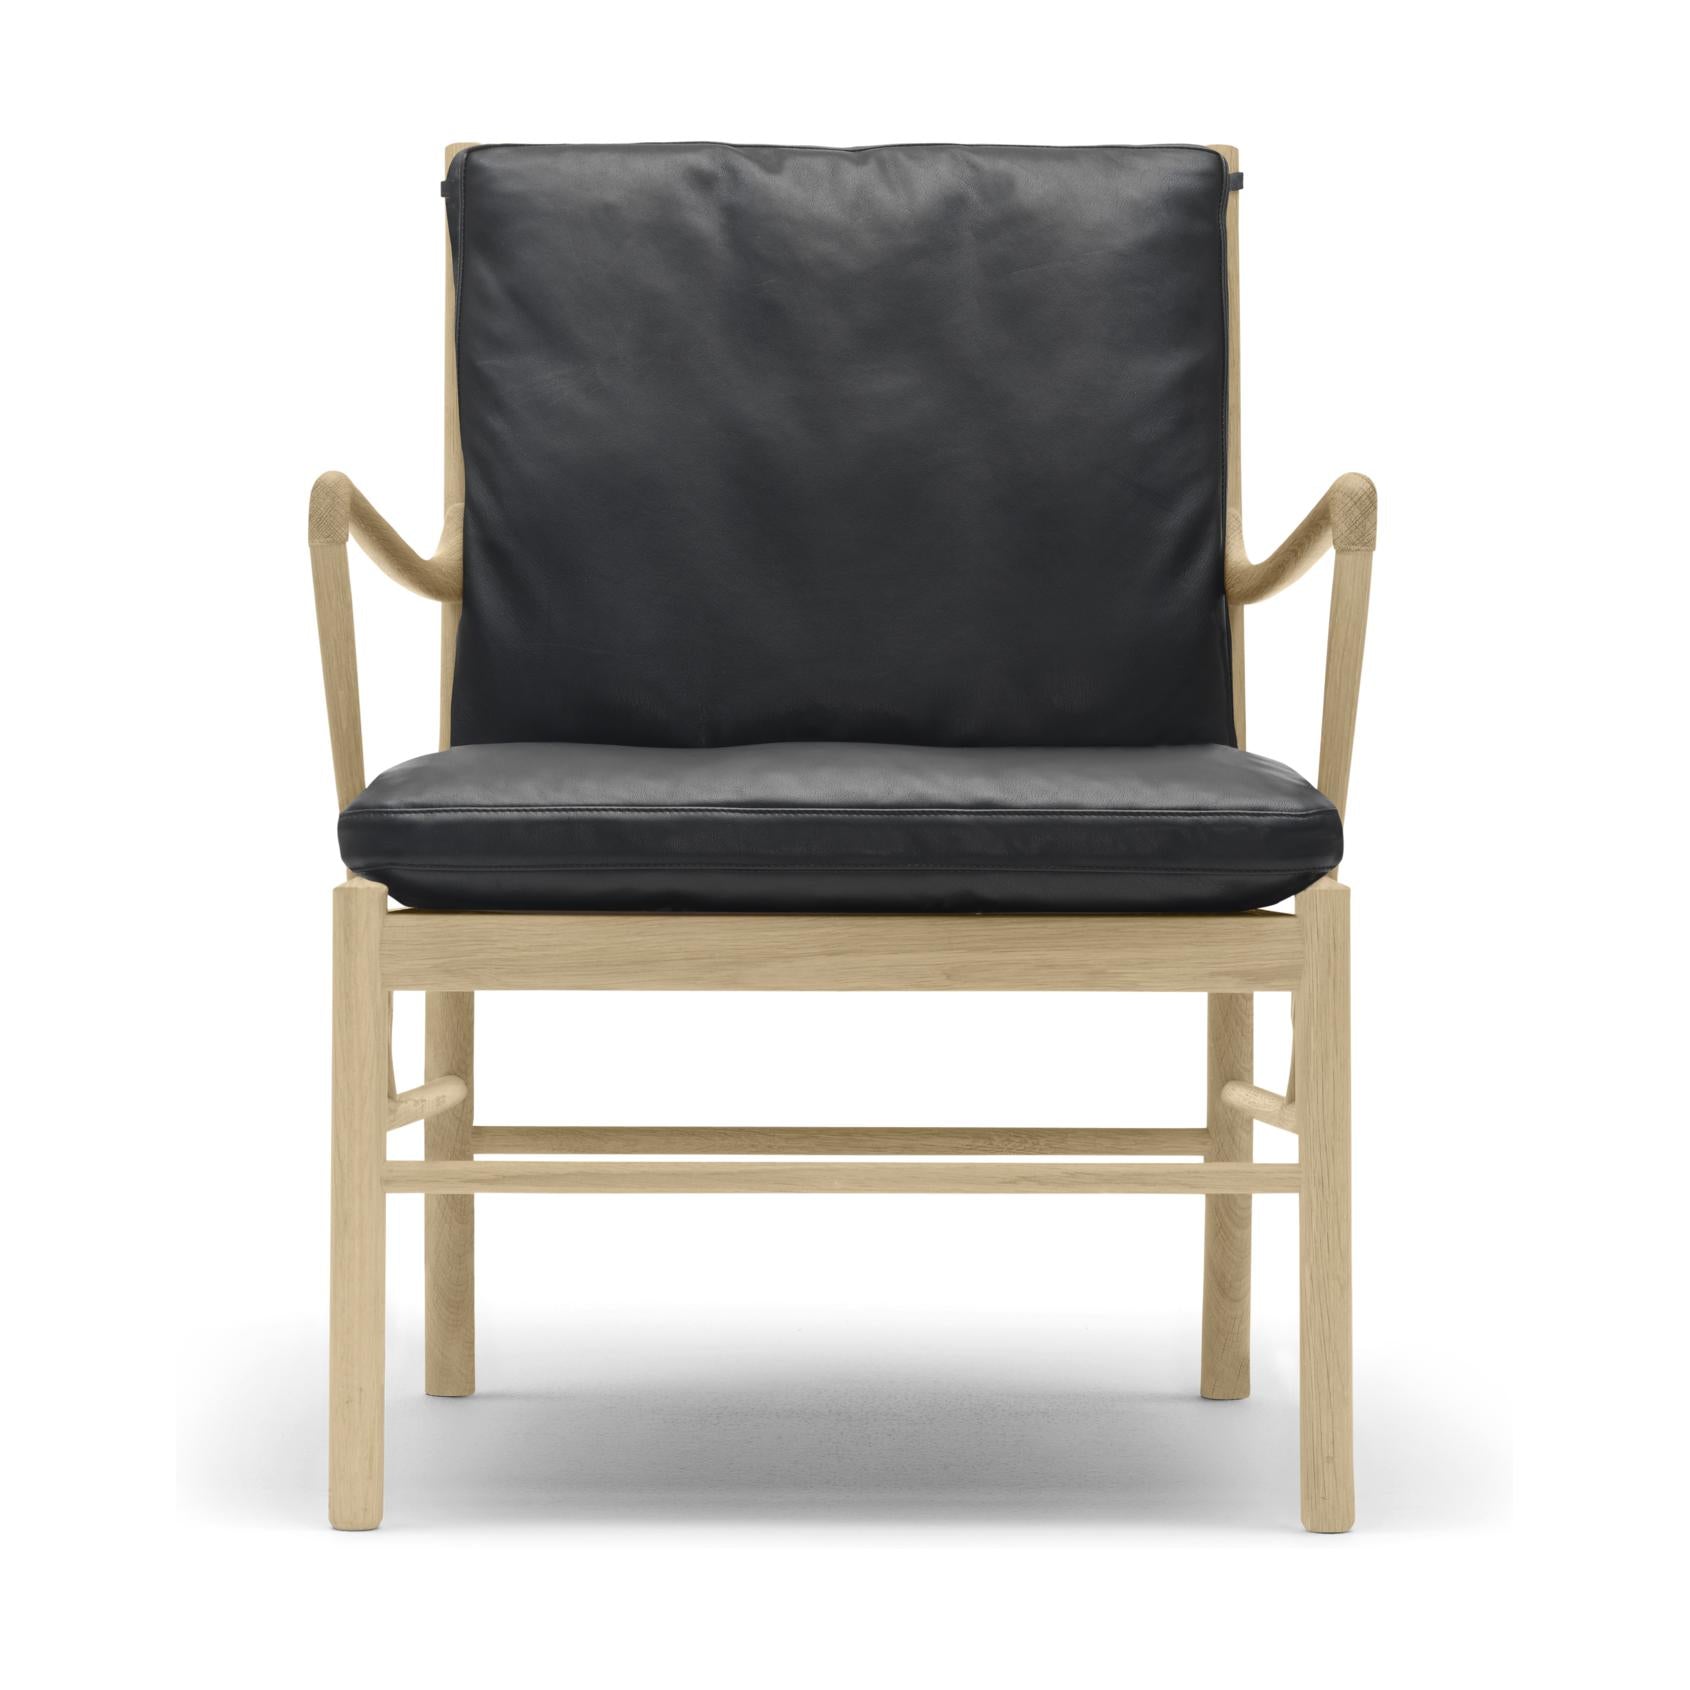 Carl Hansen Ow149 Chaise coloniale, chêne huilé/cuir noir